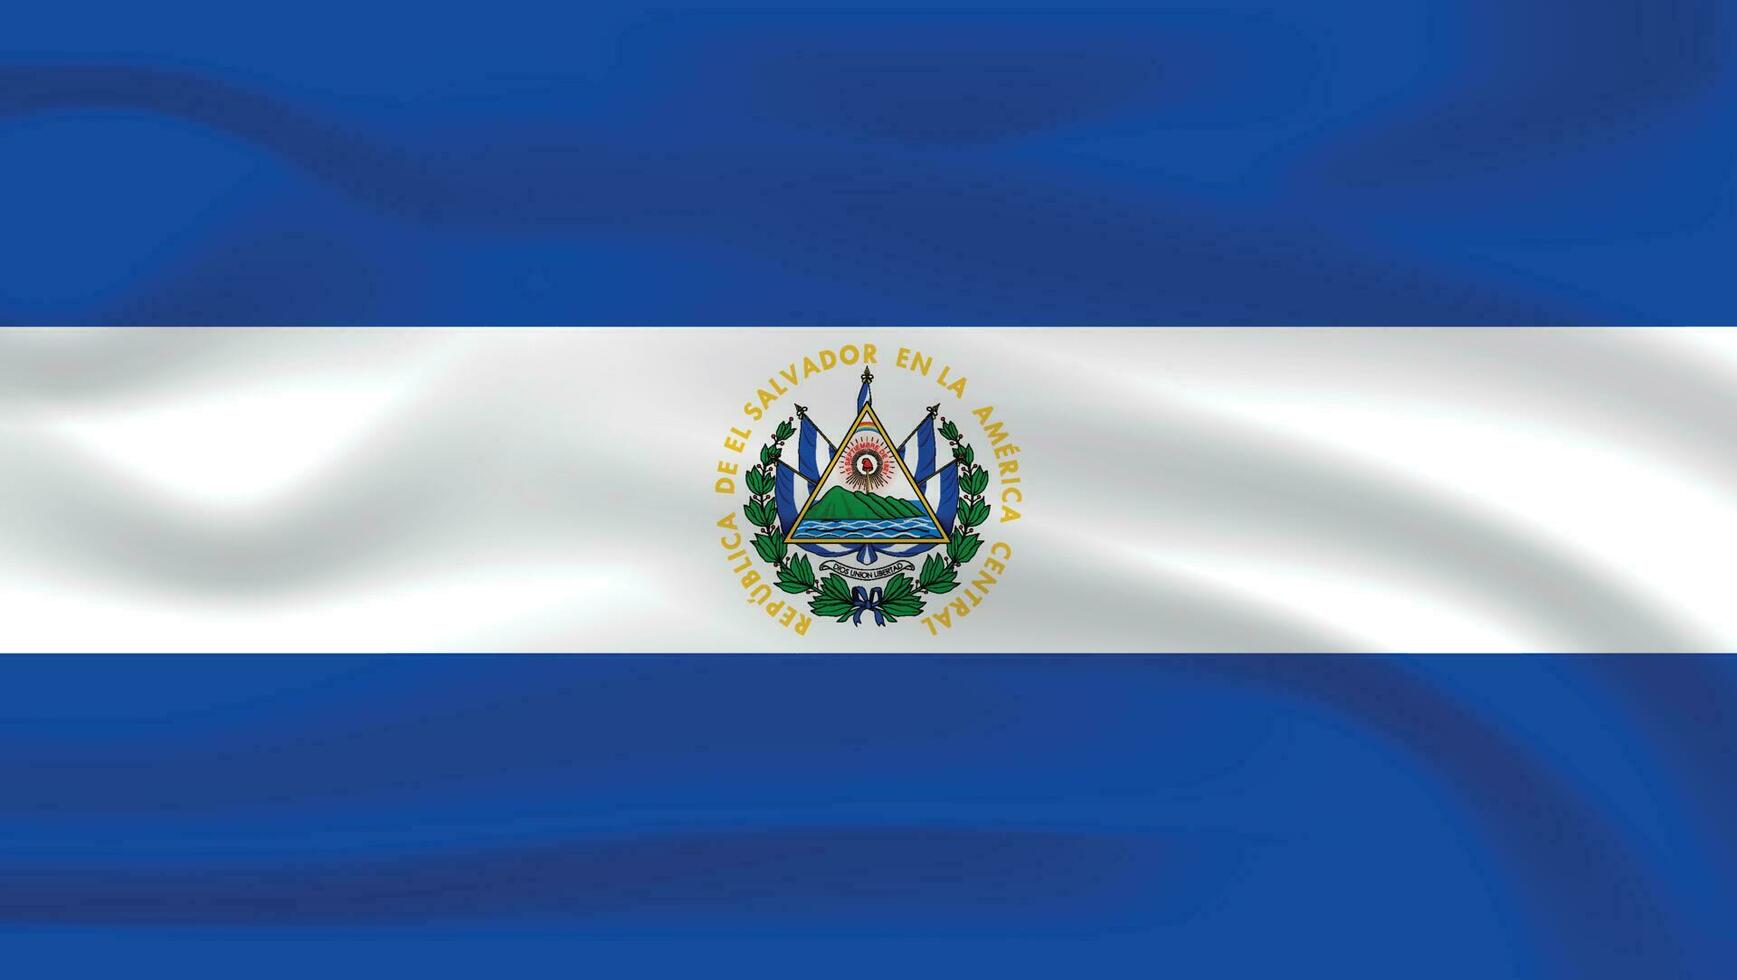 Realistic flag of El Salvador, El Salvador flag vector